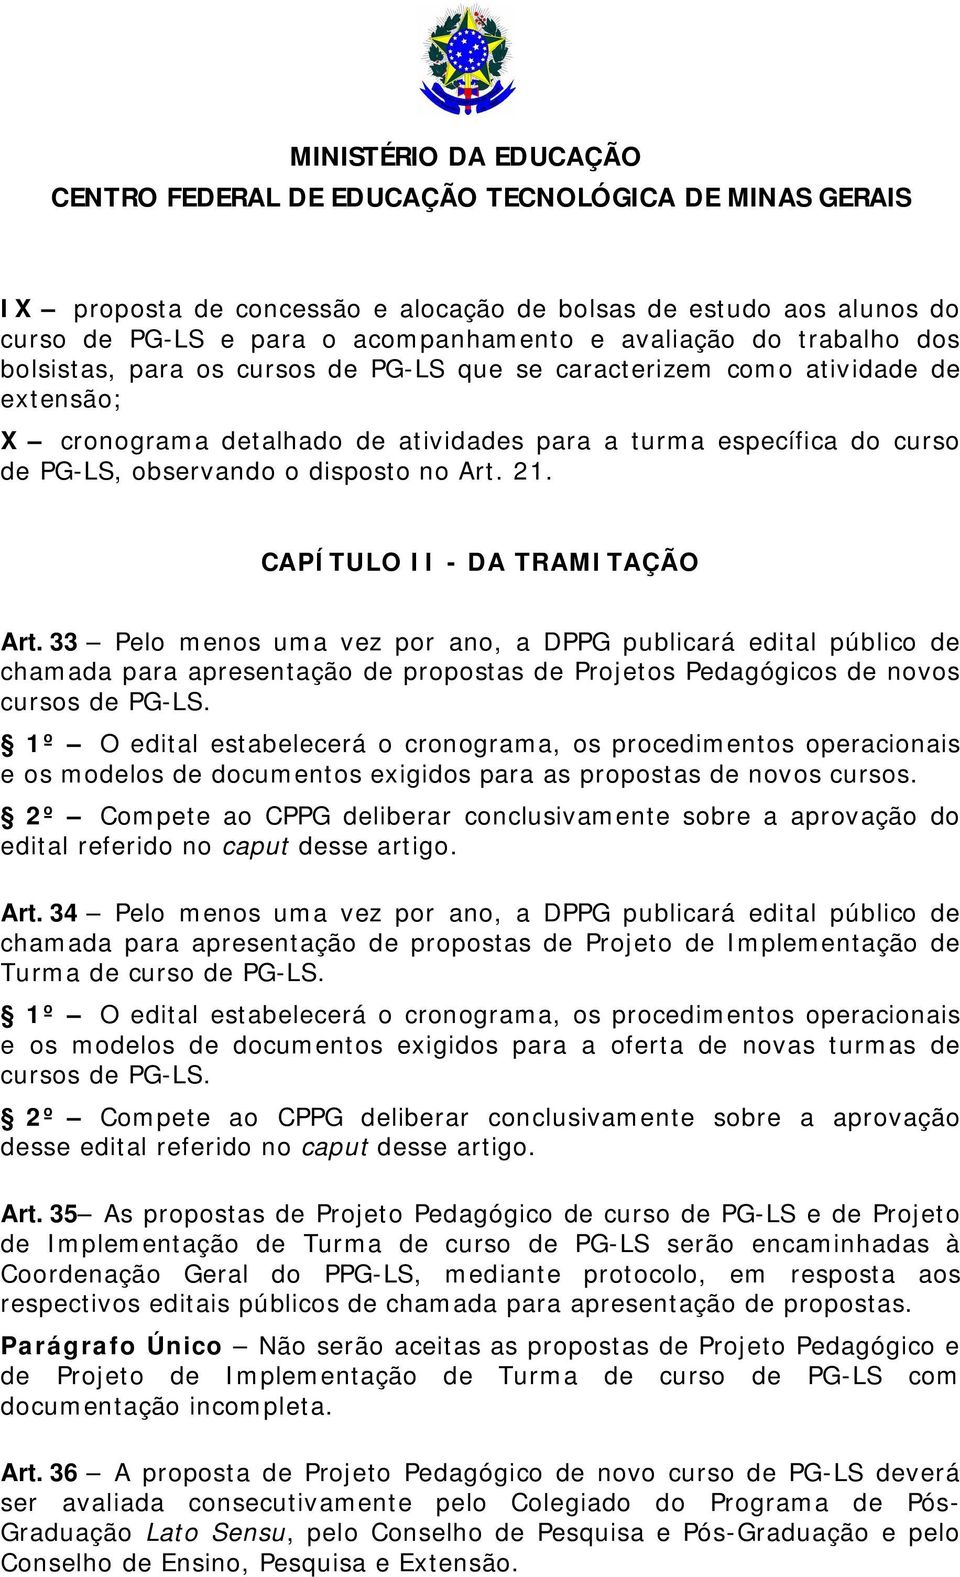 33 Pelo menos uma vez por ano, a DPPG publicará edital público de chamada para apresentação de propostas de Projetos Pedagógicos de novos cursos de PG-LS.